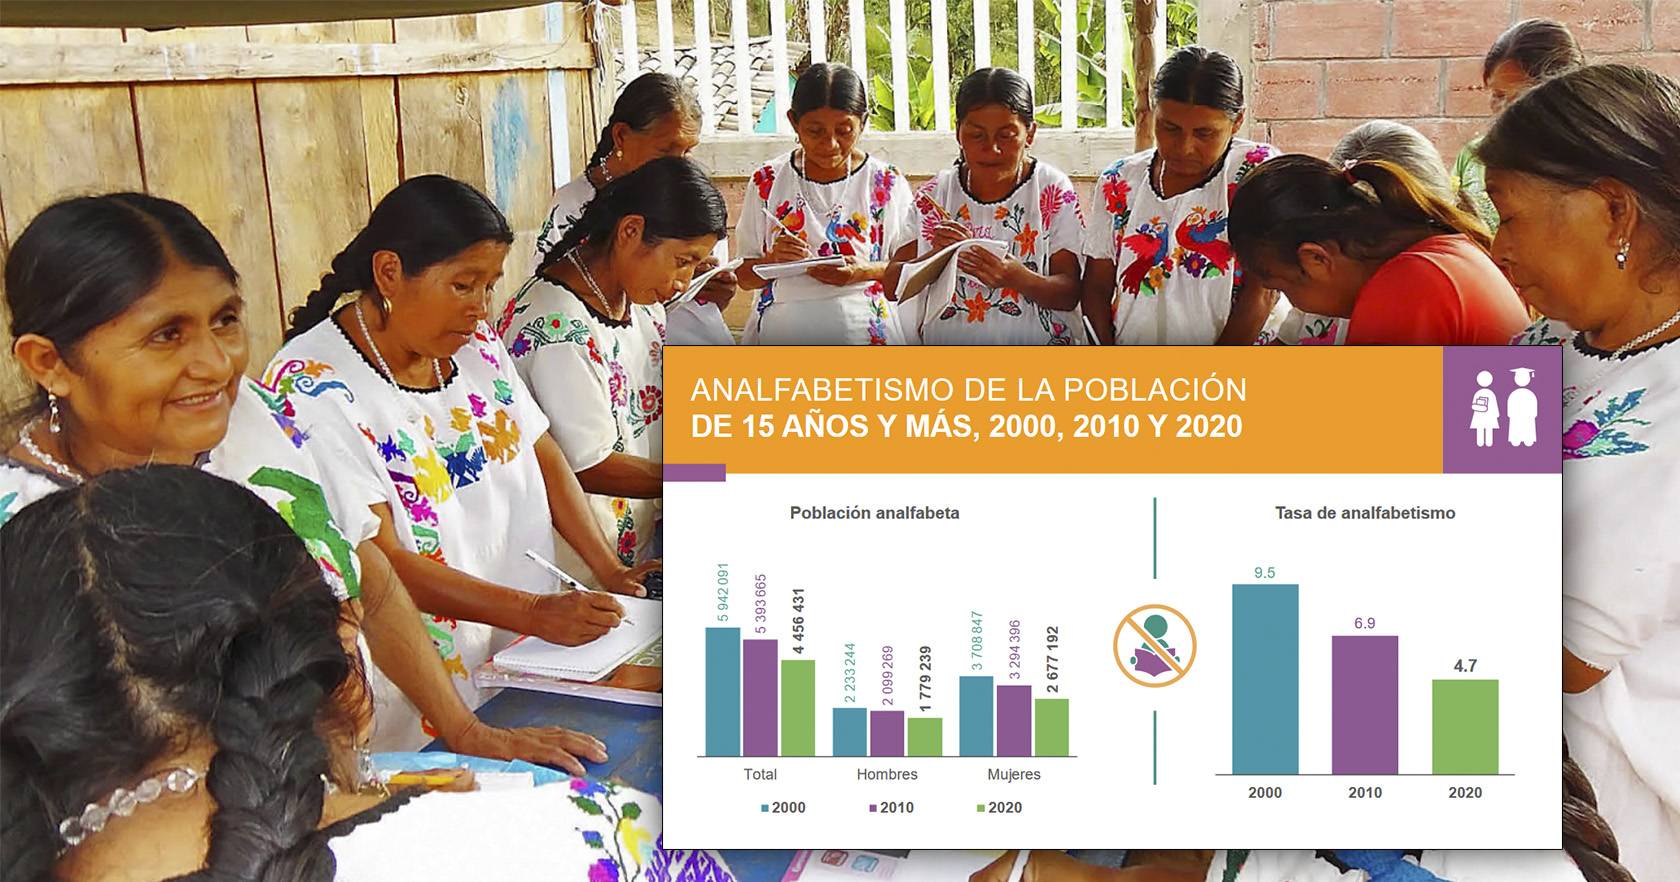 Analfabetismo ha bajado en 20 años, especialmente en mujeres- Censo INEGI 2020